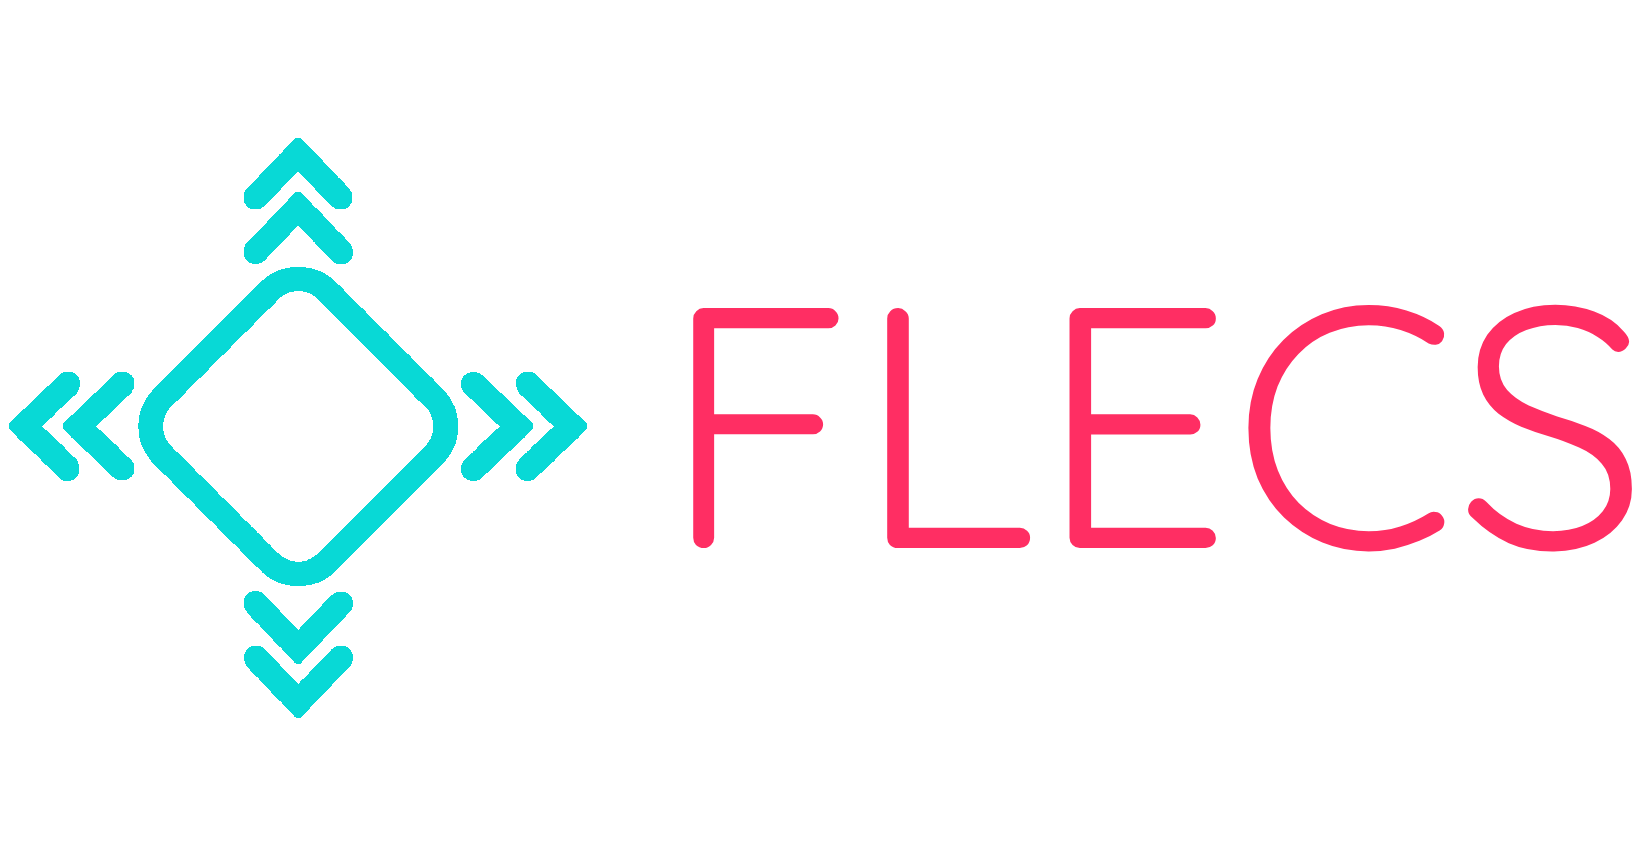 FLECS - FLECS